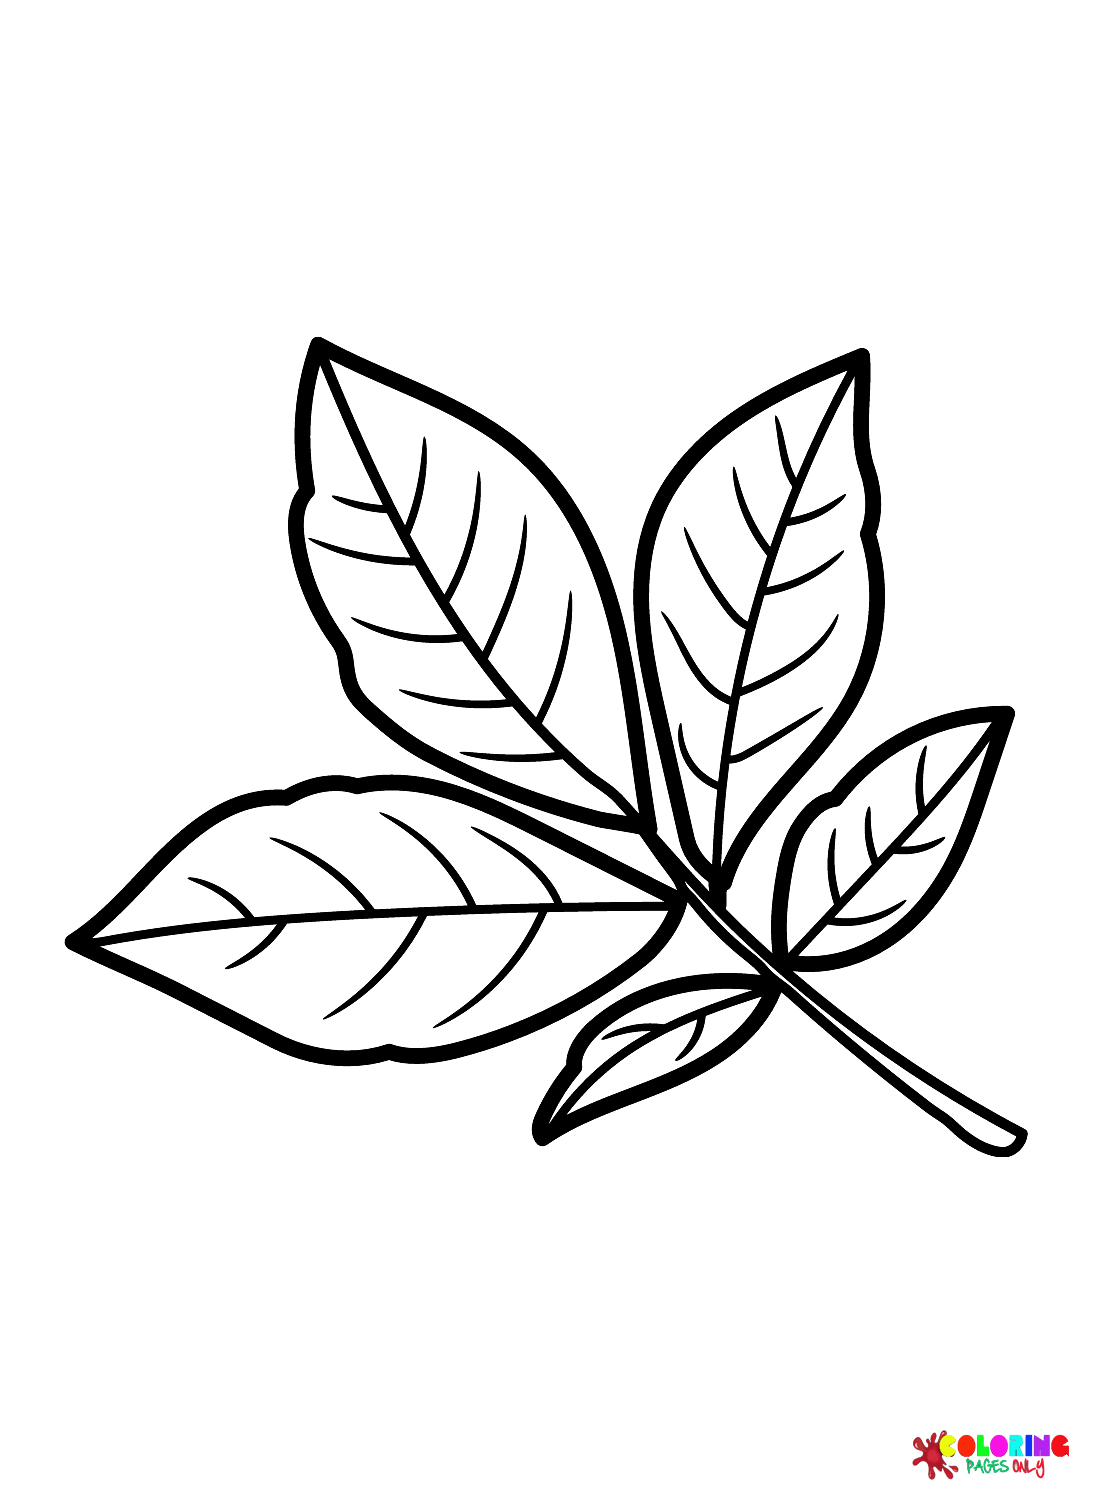 Shagbark hickory blad kleurplaat